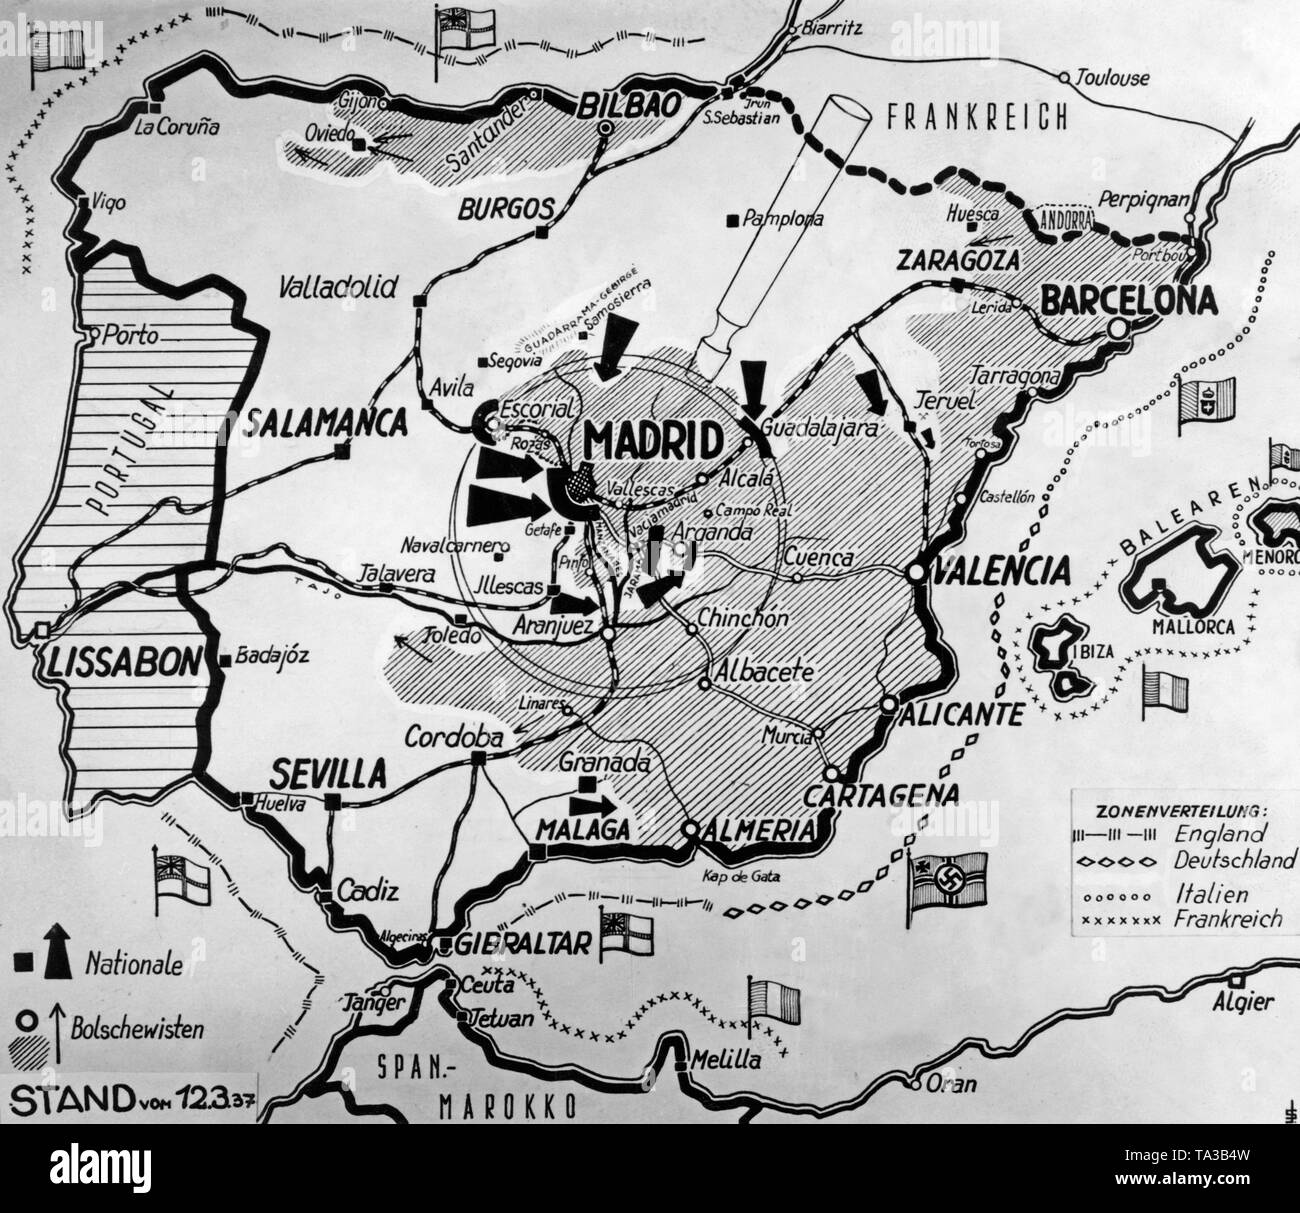 Mappa di Spagna con le sue frontiere il 12 marzo 1937. I territori della Repubblica sono ombreggiate. Secondo la leggenda i repubblicani sono chiamati bolscevichi. Le frecce indicano le offensive della nazionale spagnola di fazione. Foto Stock